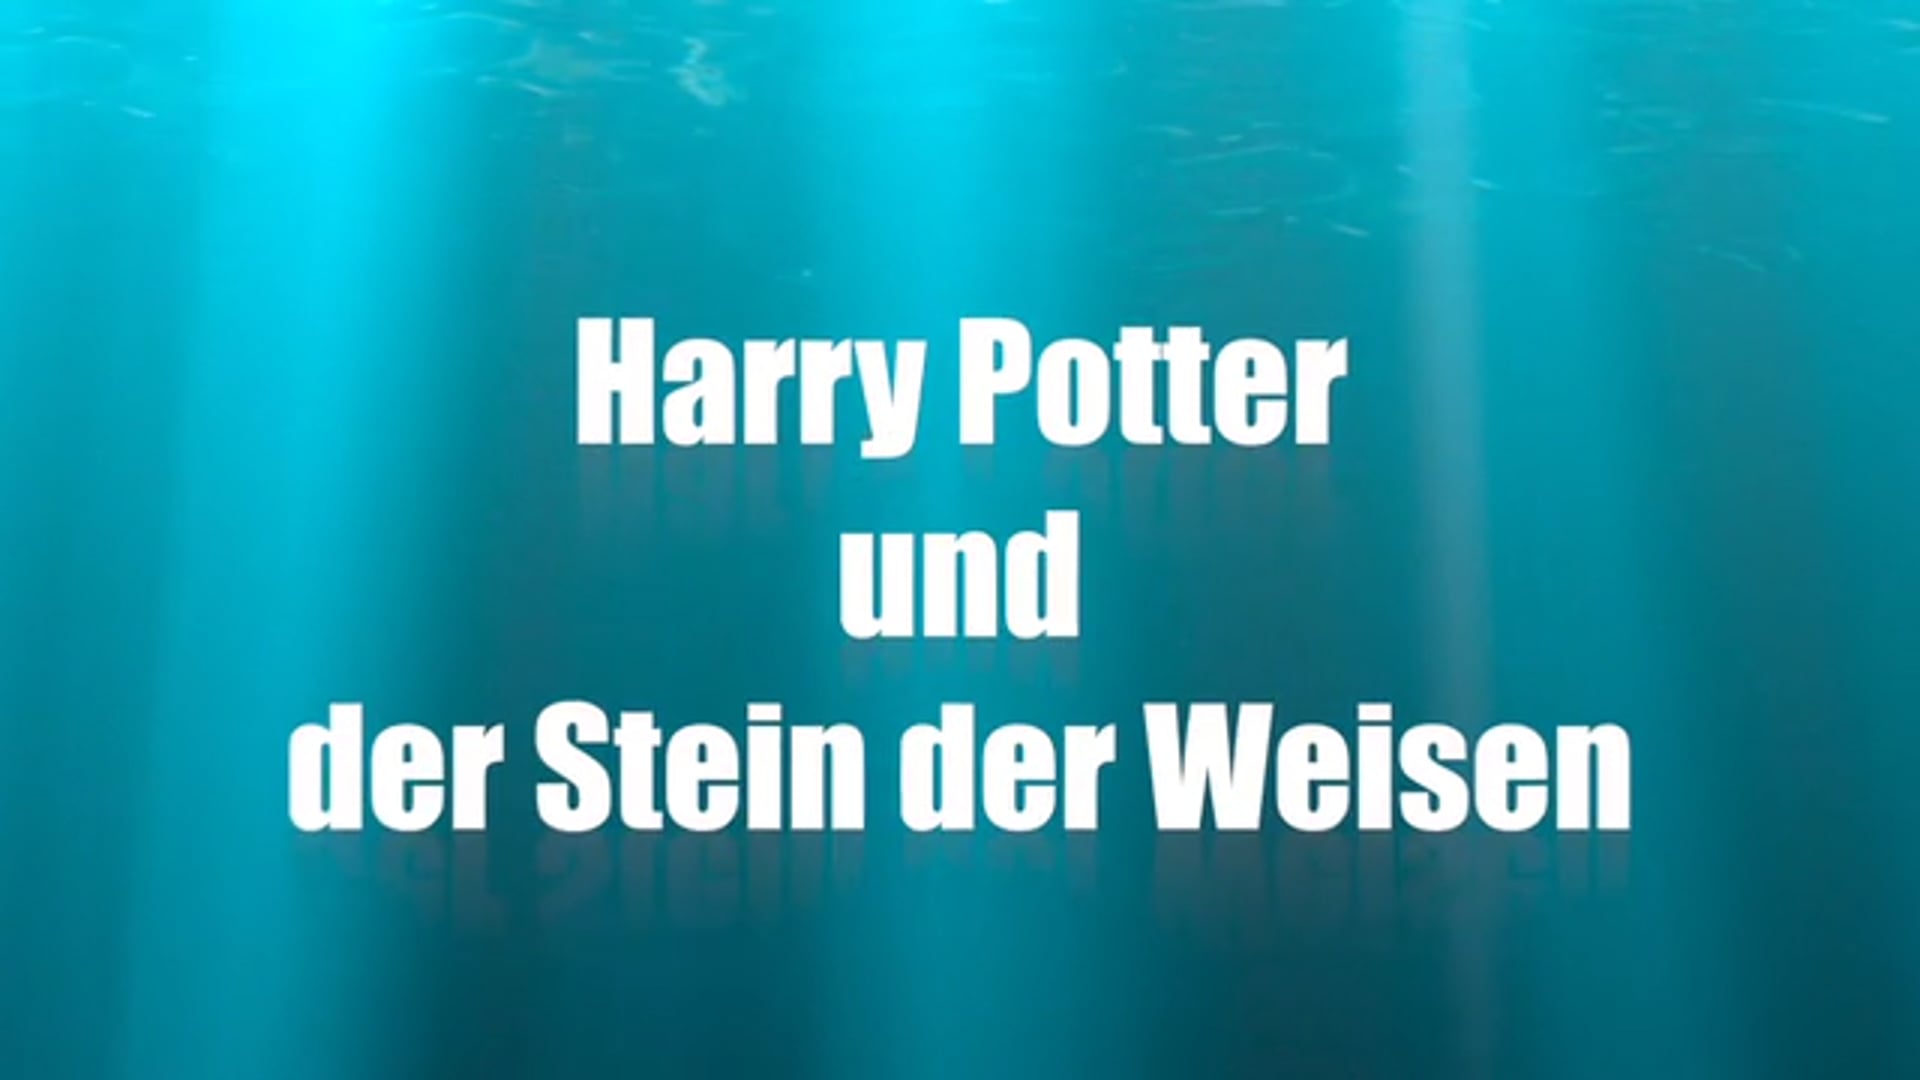 Harry Potter und der Stein der Weisen - Kinderyogastunde